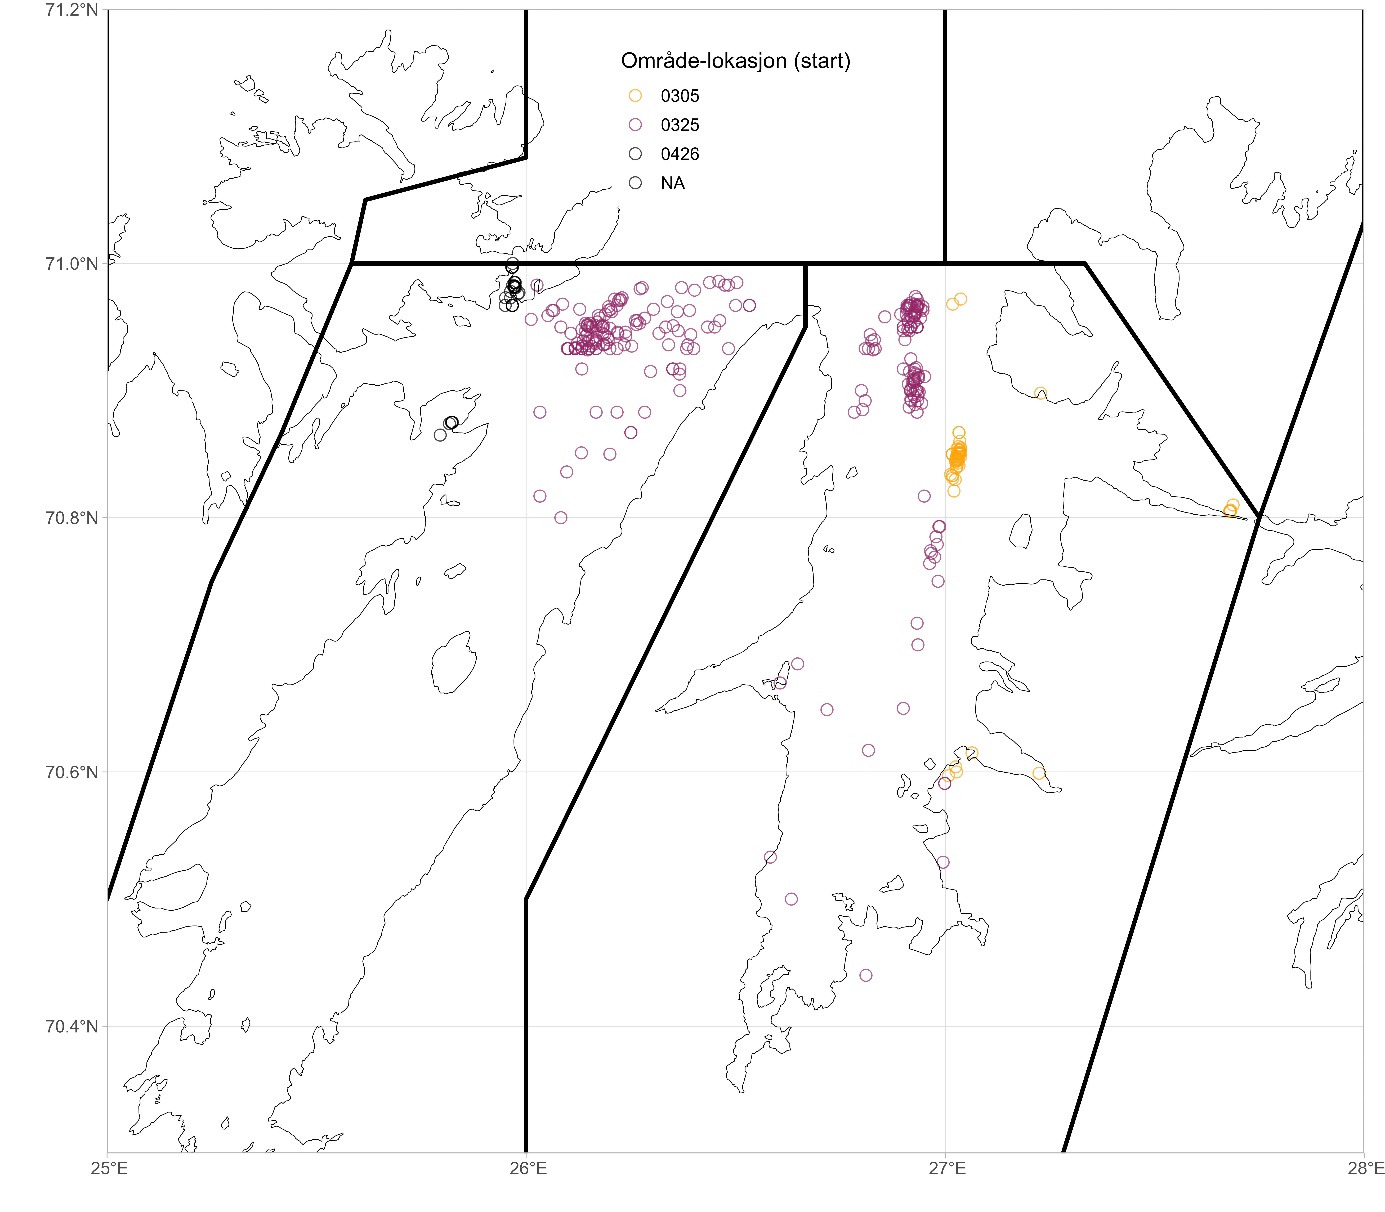 Kartet viser startposisjoner (koordinater) for alle hal med reketrål i Porsanger- og Tanafjorden i 2021-2023. Fargeskalaen viser imidlertid at omr-lok er feil oppgitt for mange hal . Ingen av halene i Porsangerfjorden har korrekt omr-lok, de fleste er registrert med omr-lok som er Laksefjorden. Dvs at om man søker på omr-lok 03-24 (Porsangerfjorden)i dagbøkene for 2021-2023, så får man null treff